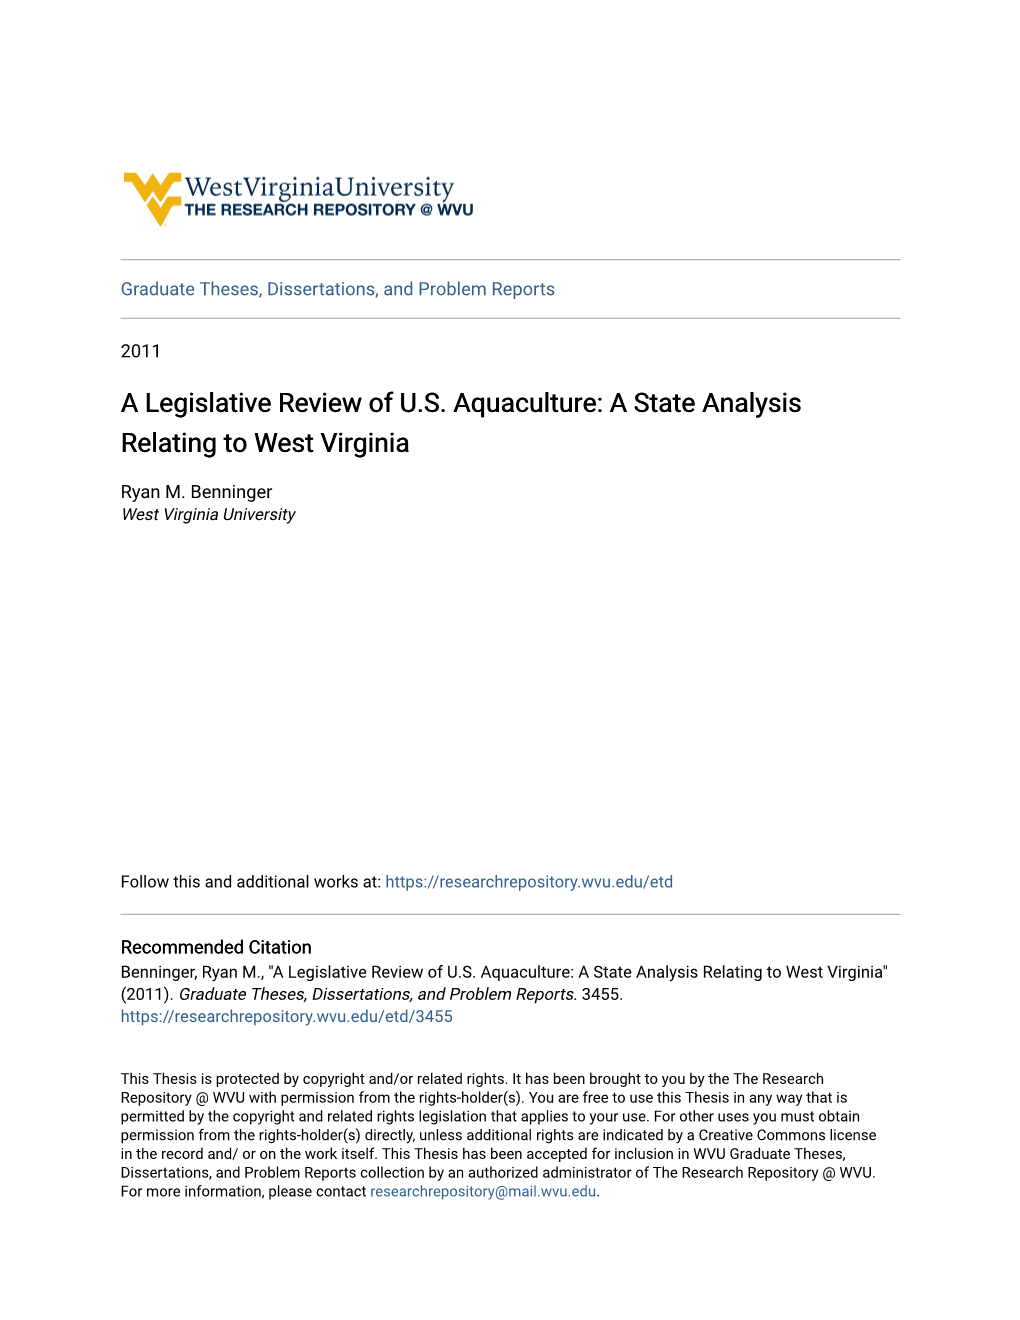 A Legislative Review of US Aquaculture